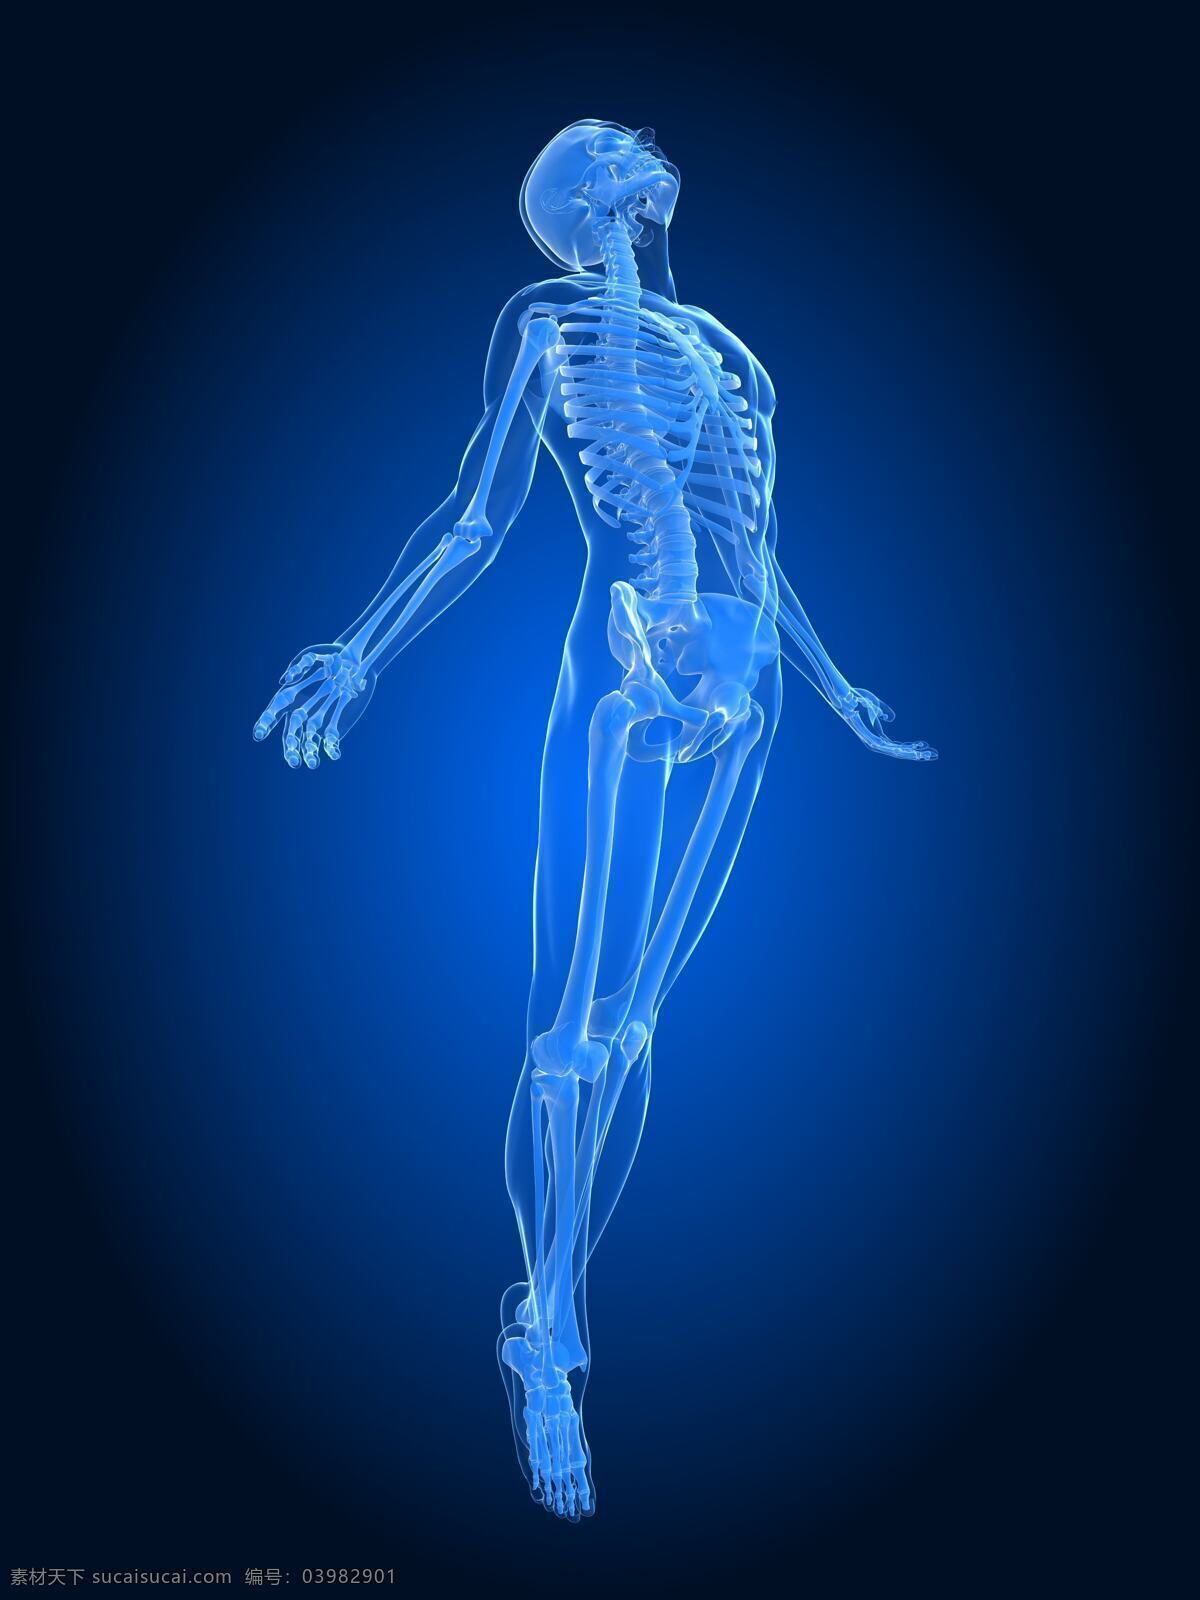 人体透视图 人体骨骼 人体动作 医疗 医学 科学 人体结构 人体透视 手指 骨头组织 骷髅 人体 骨骼 骨架 人体器官 器官 人物图片 人体器官图 医疗护理 现代科技